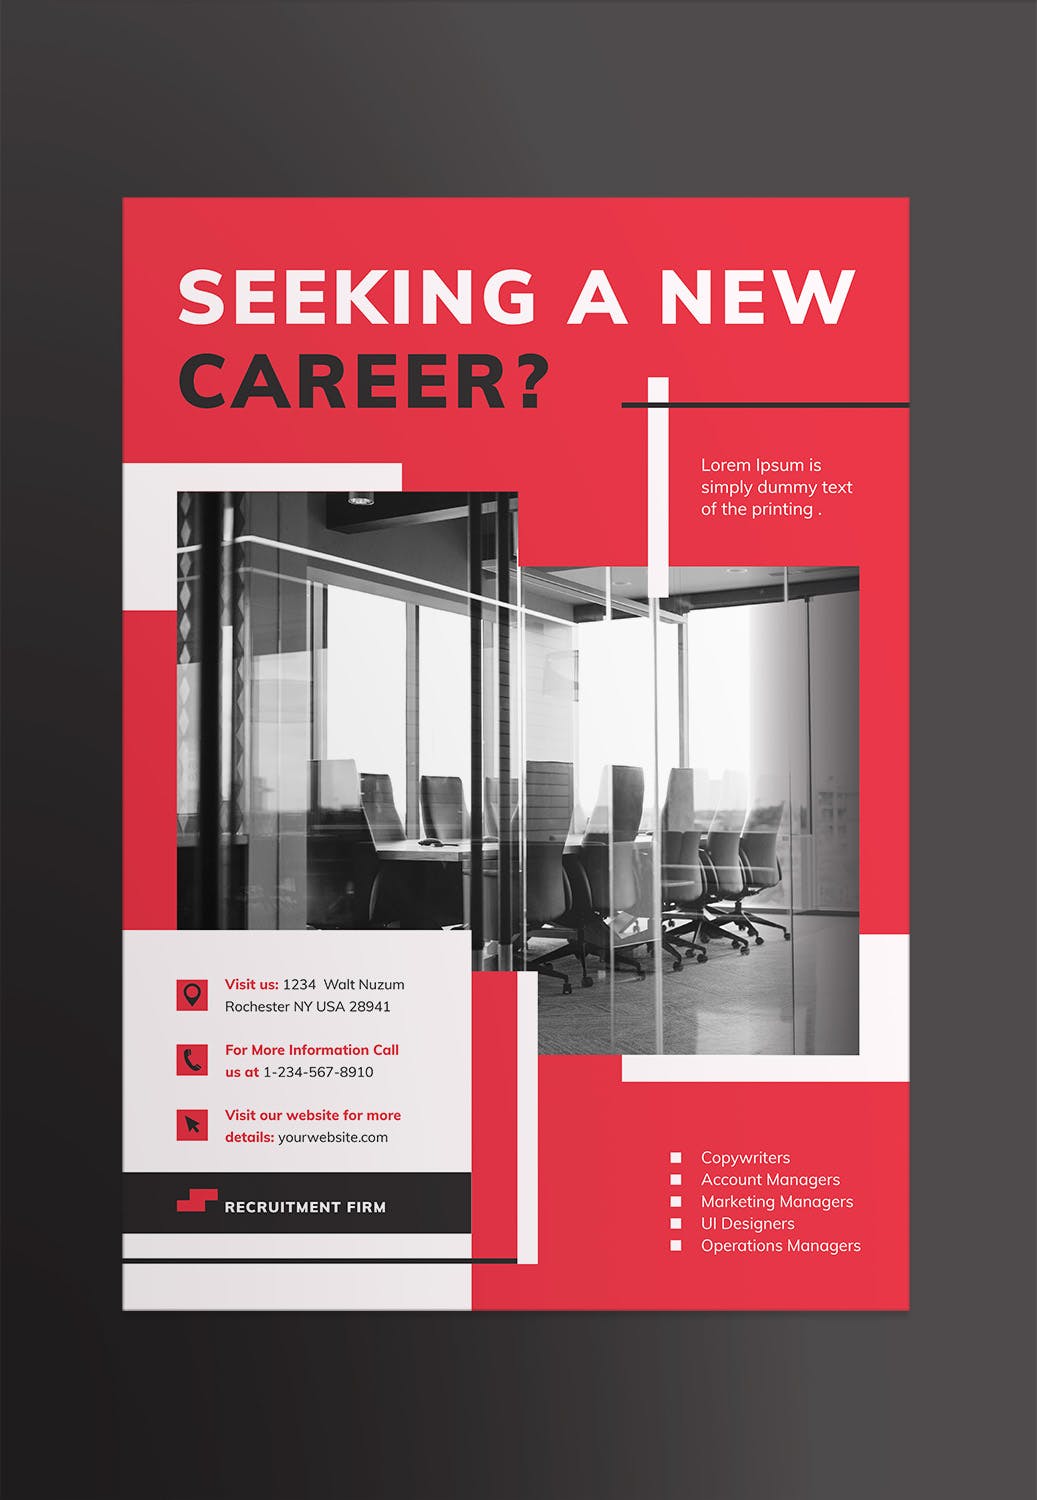 人力资源公司创意海报设计模板 Recruitment Firm Poster插图(1)